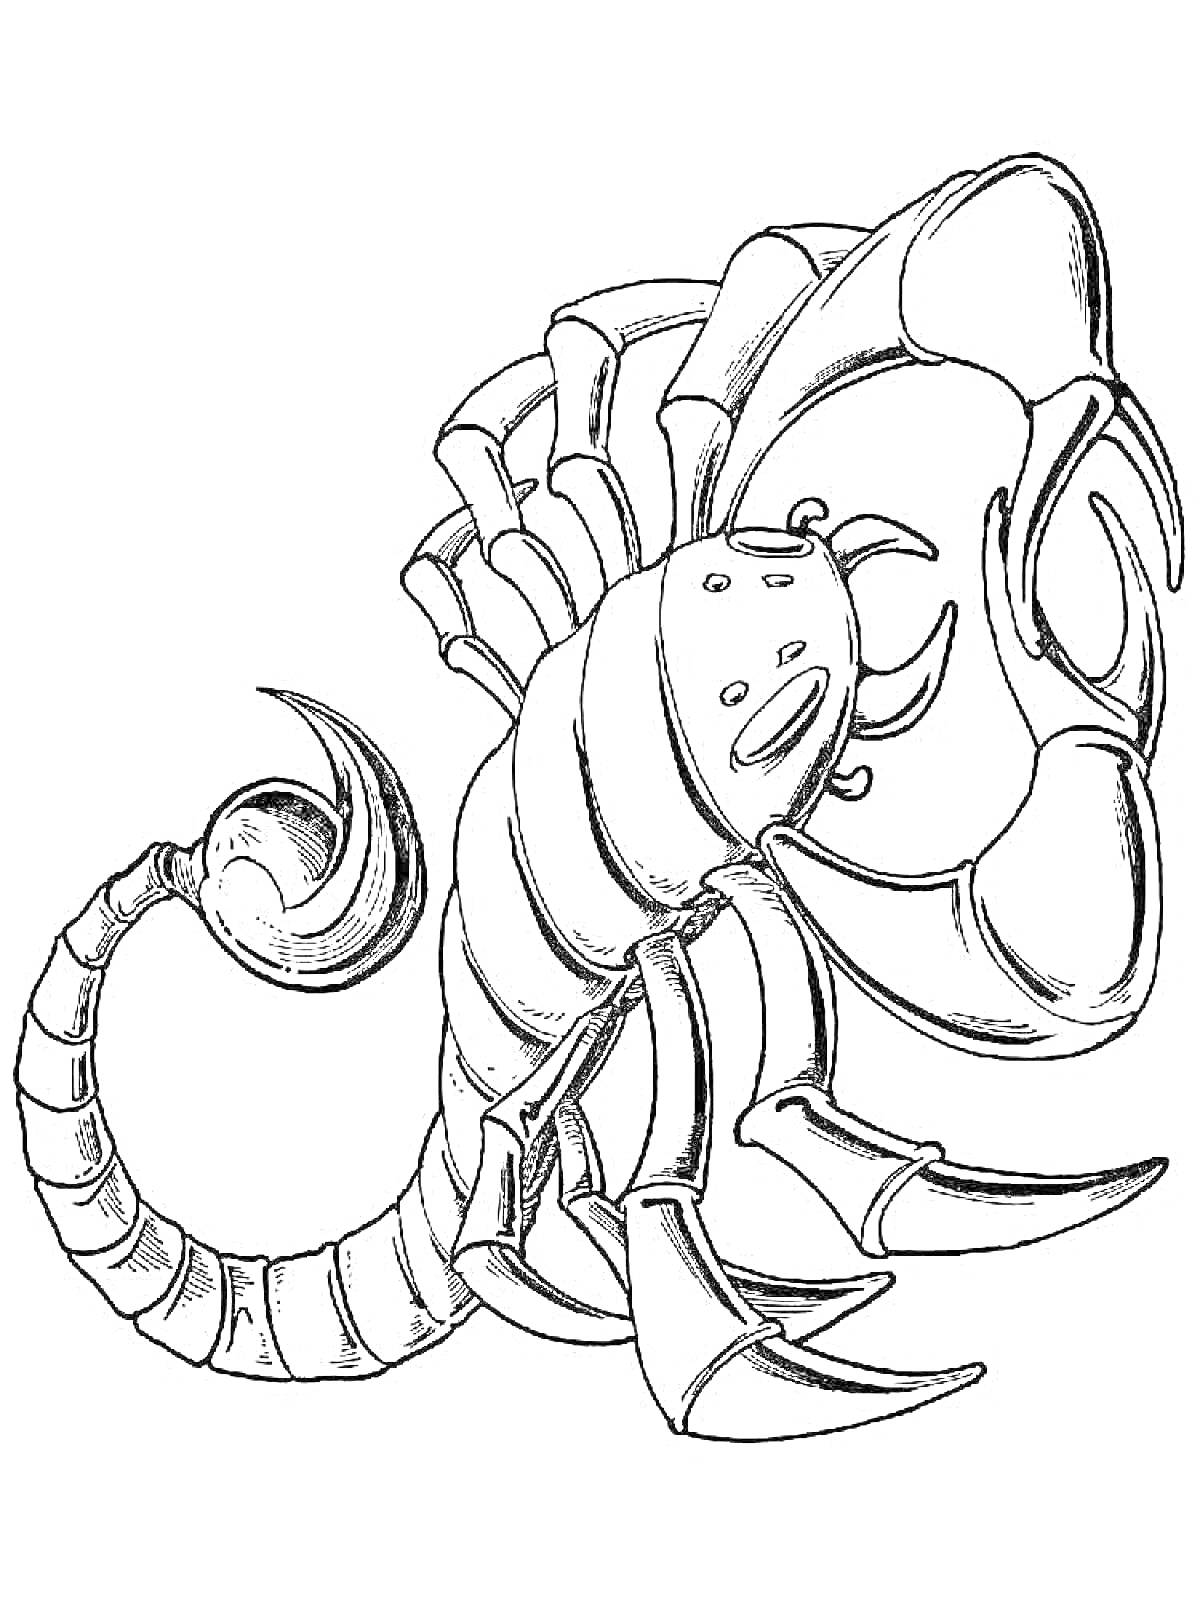 Раскраска Скорпион с поднятым хвостом и раскинутыми клешнями